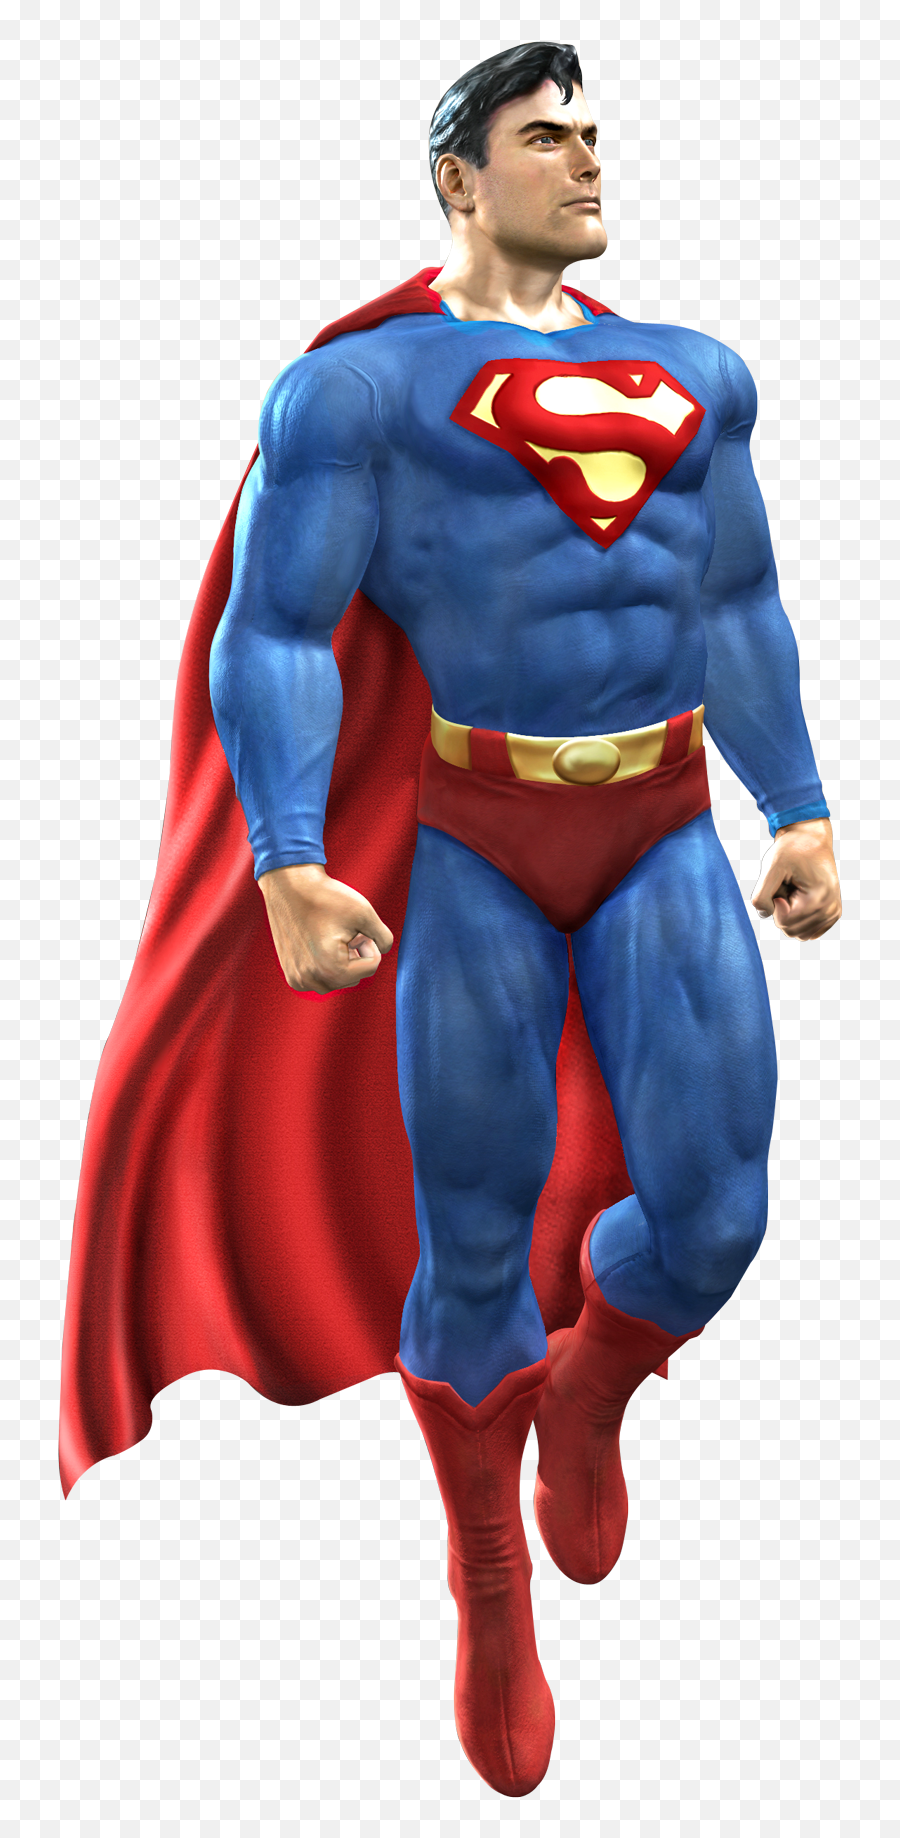 Superman Png Transparent Image - Superman Png Emoji,Superman Png